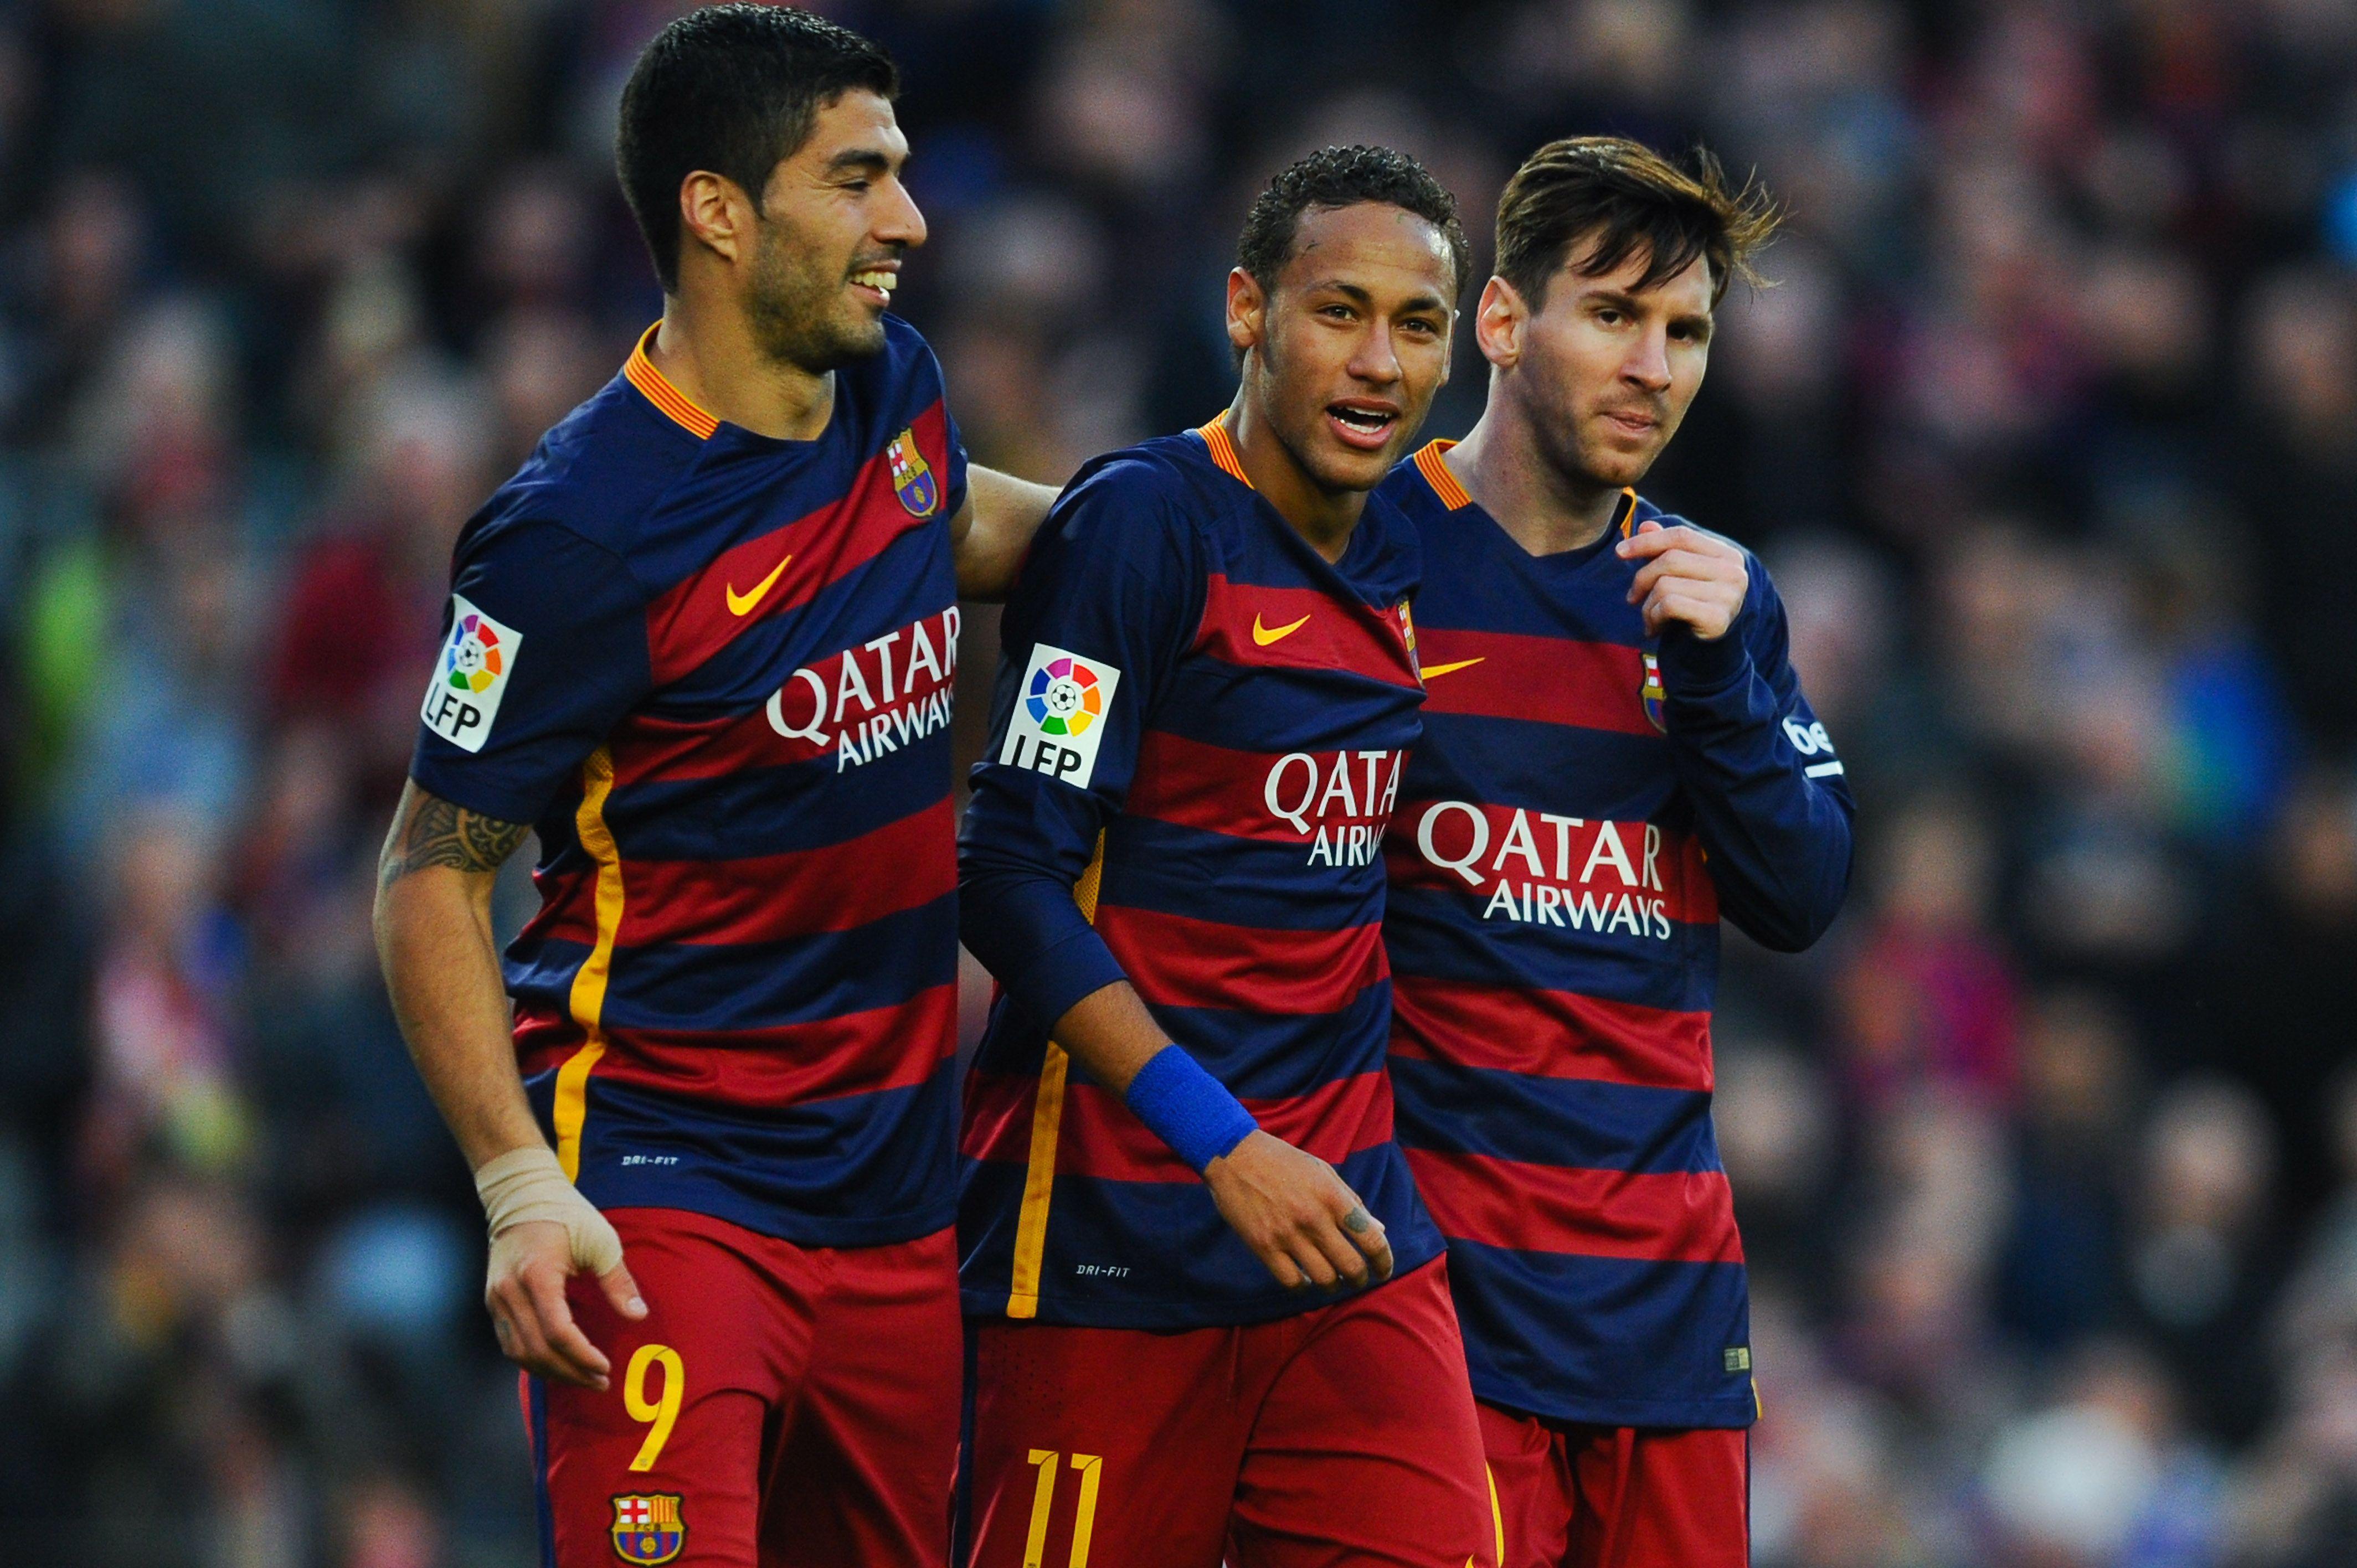 Forwards In The World 2015: Lionel Messi, Cristiano Ronaldo